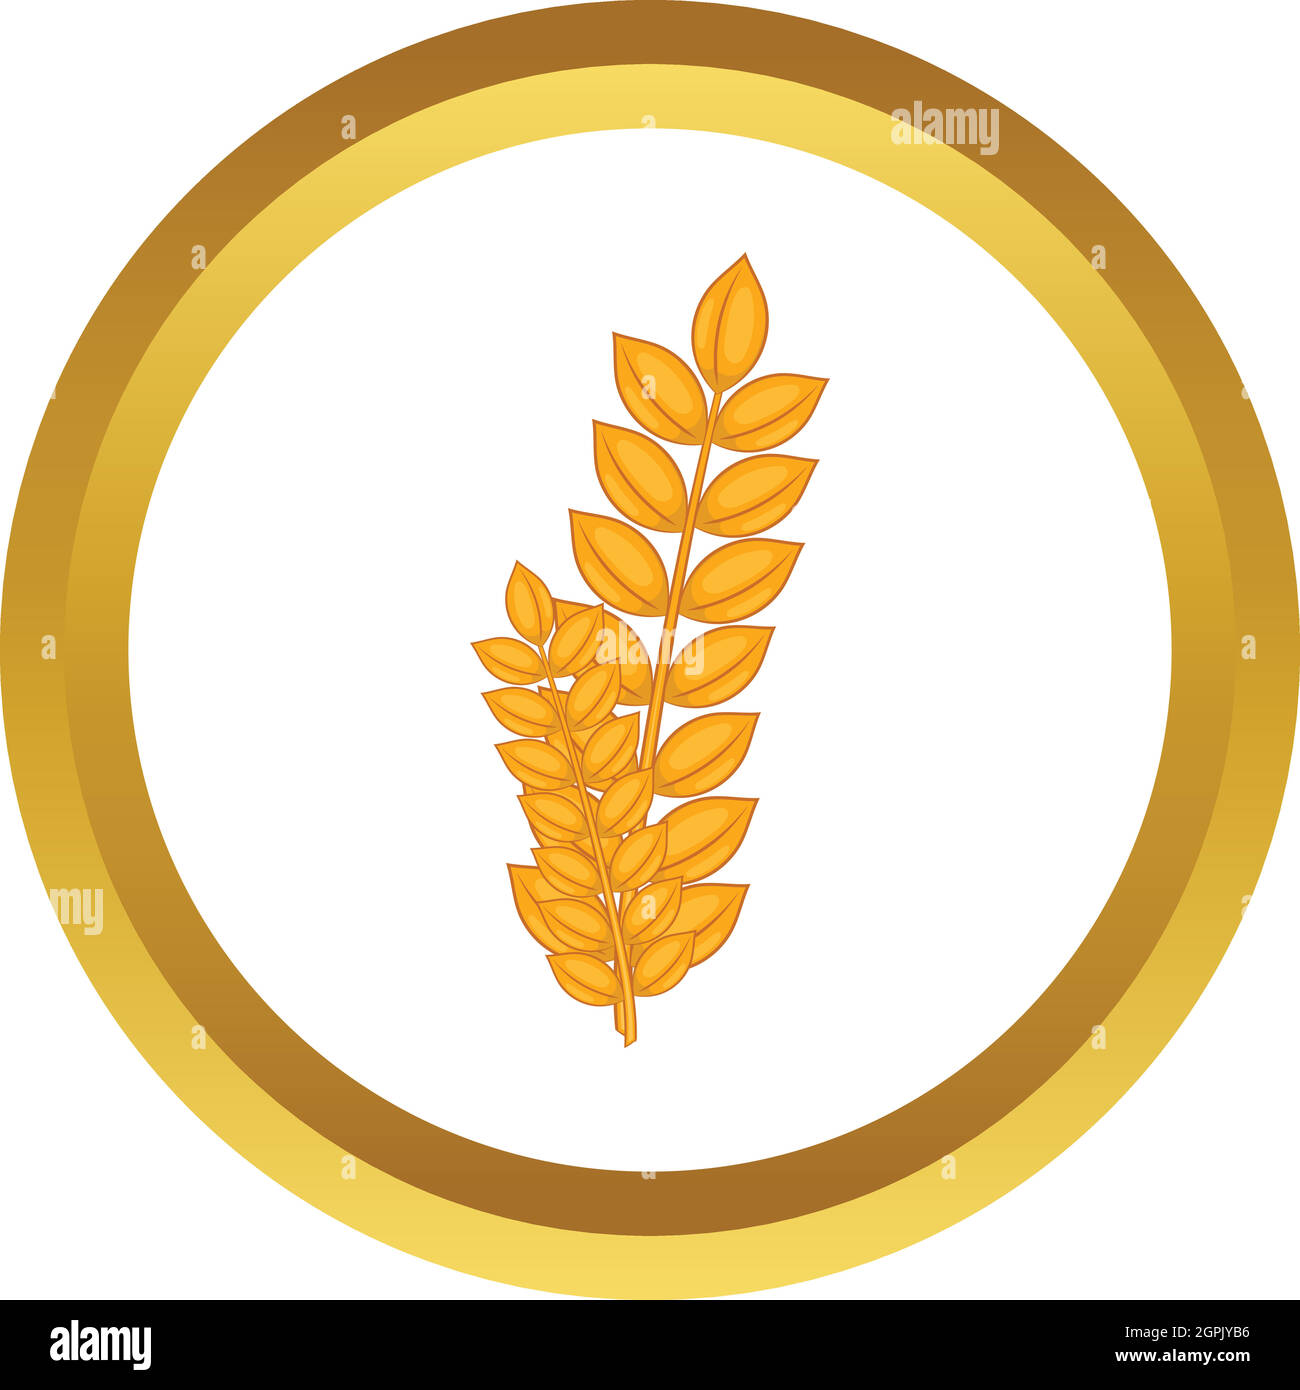 Wheat germ vector icon Stock Vector